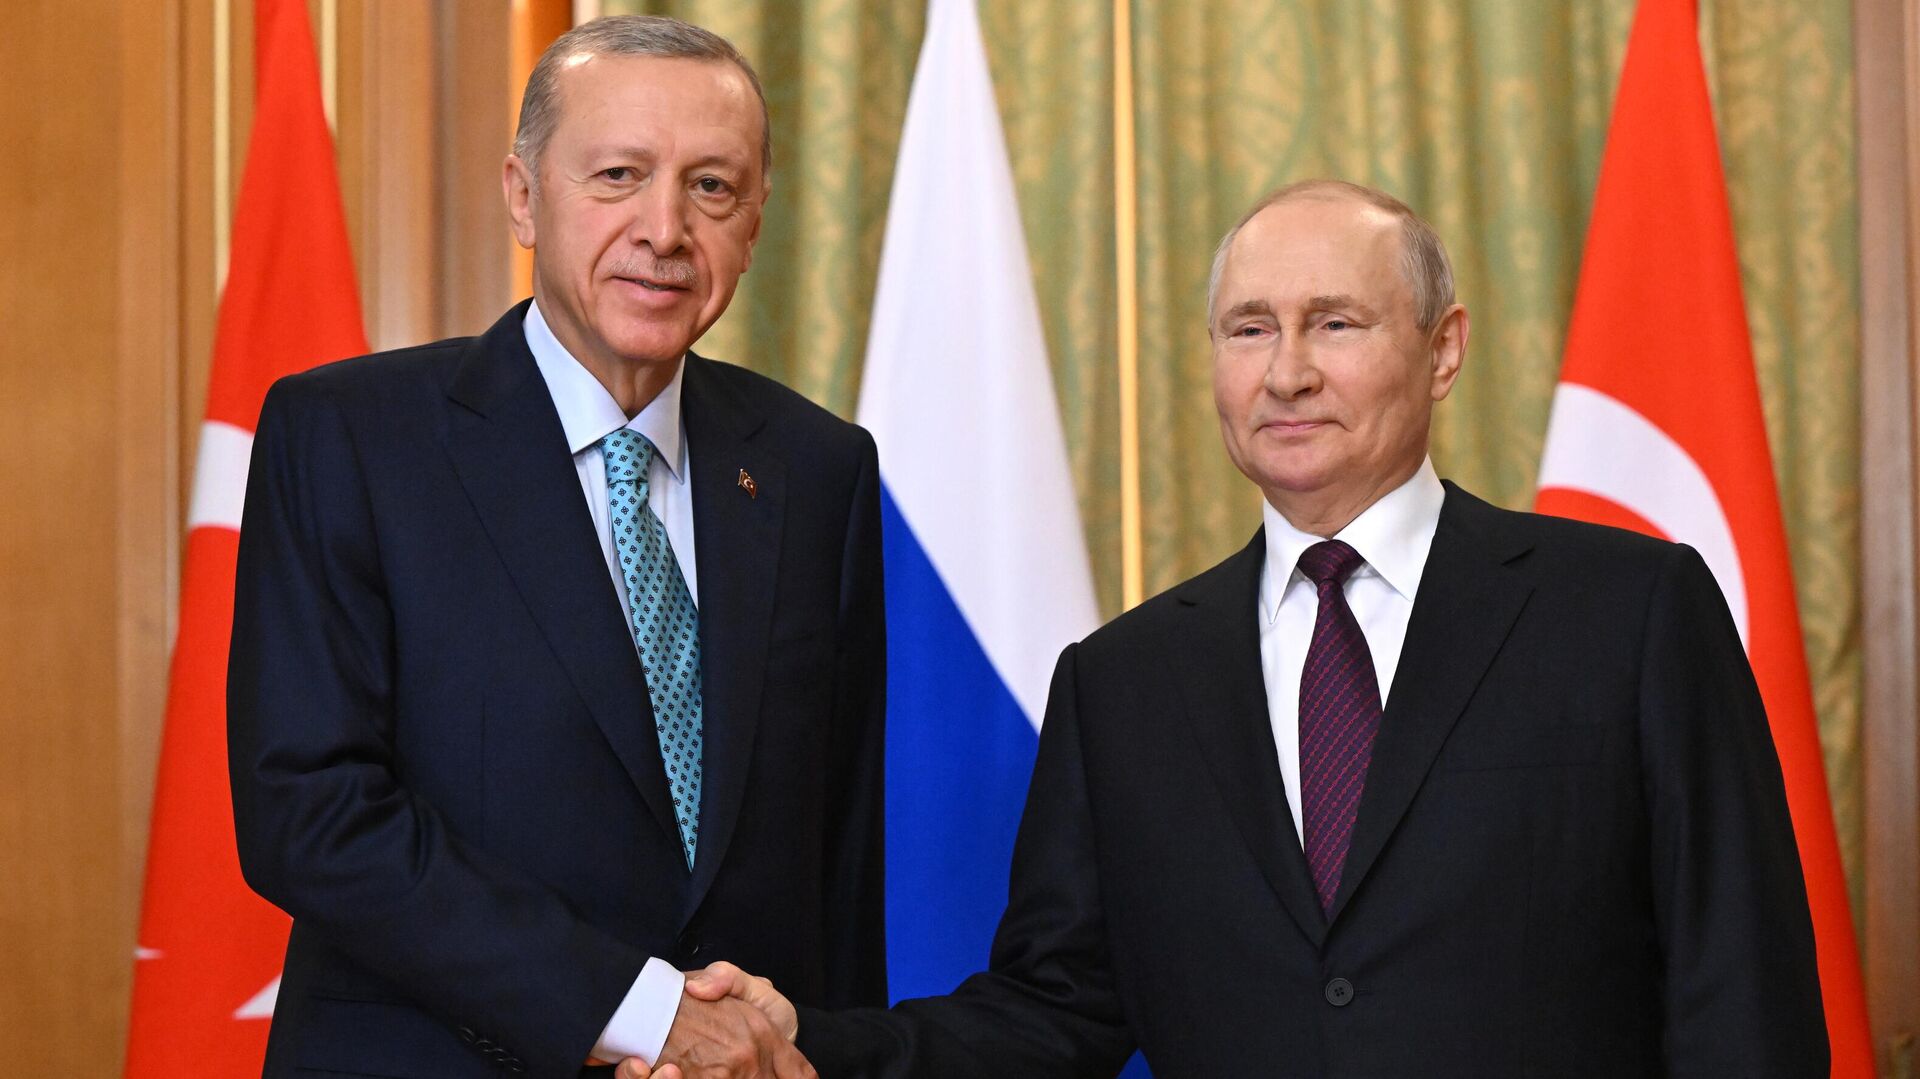 Встреча Путина и Эрдогана прорабатывается, но конкретных дат еще нет